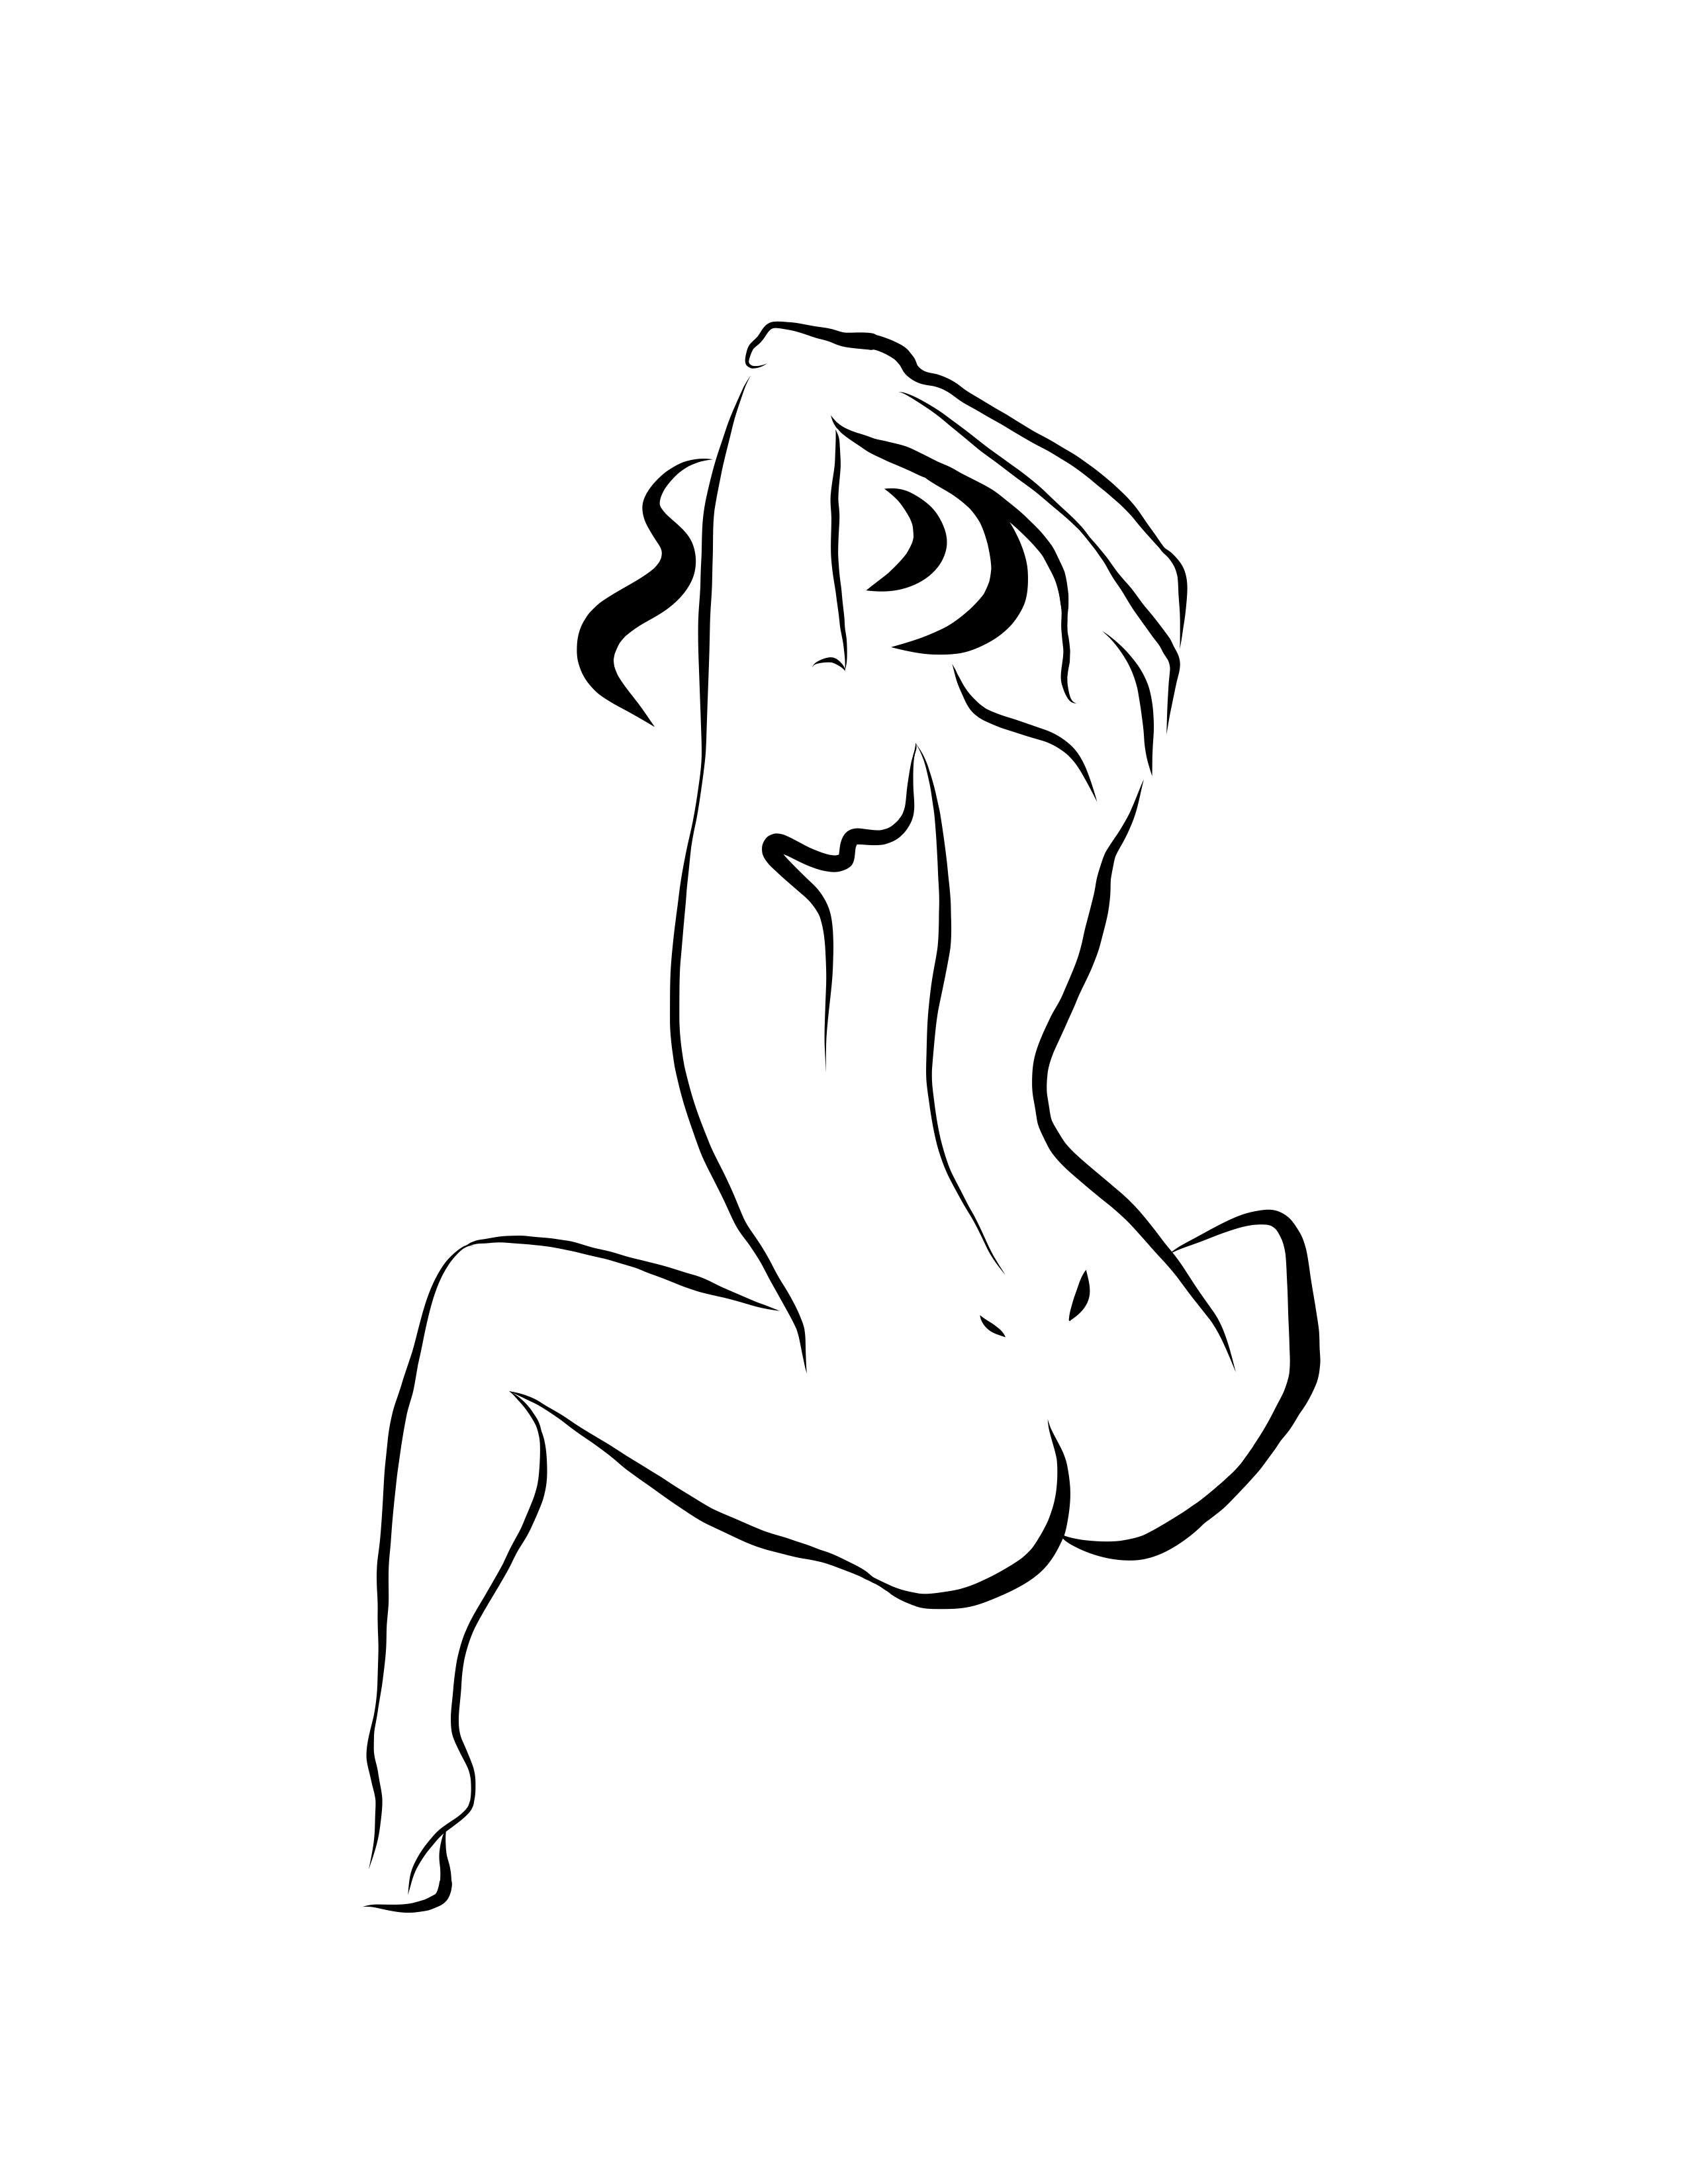 Michael Binkley Nude Print - Haiku #13, 1/50 - Digital Vector Drawing Seated Female Nude Woman Figure